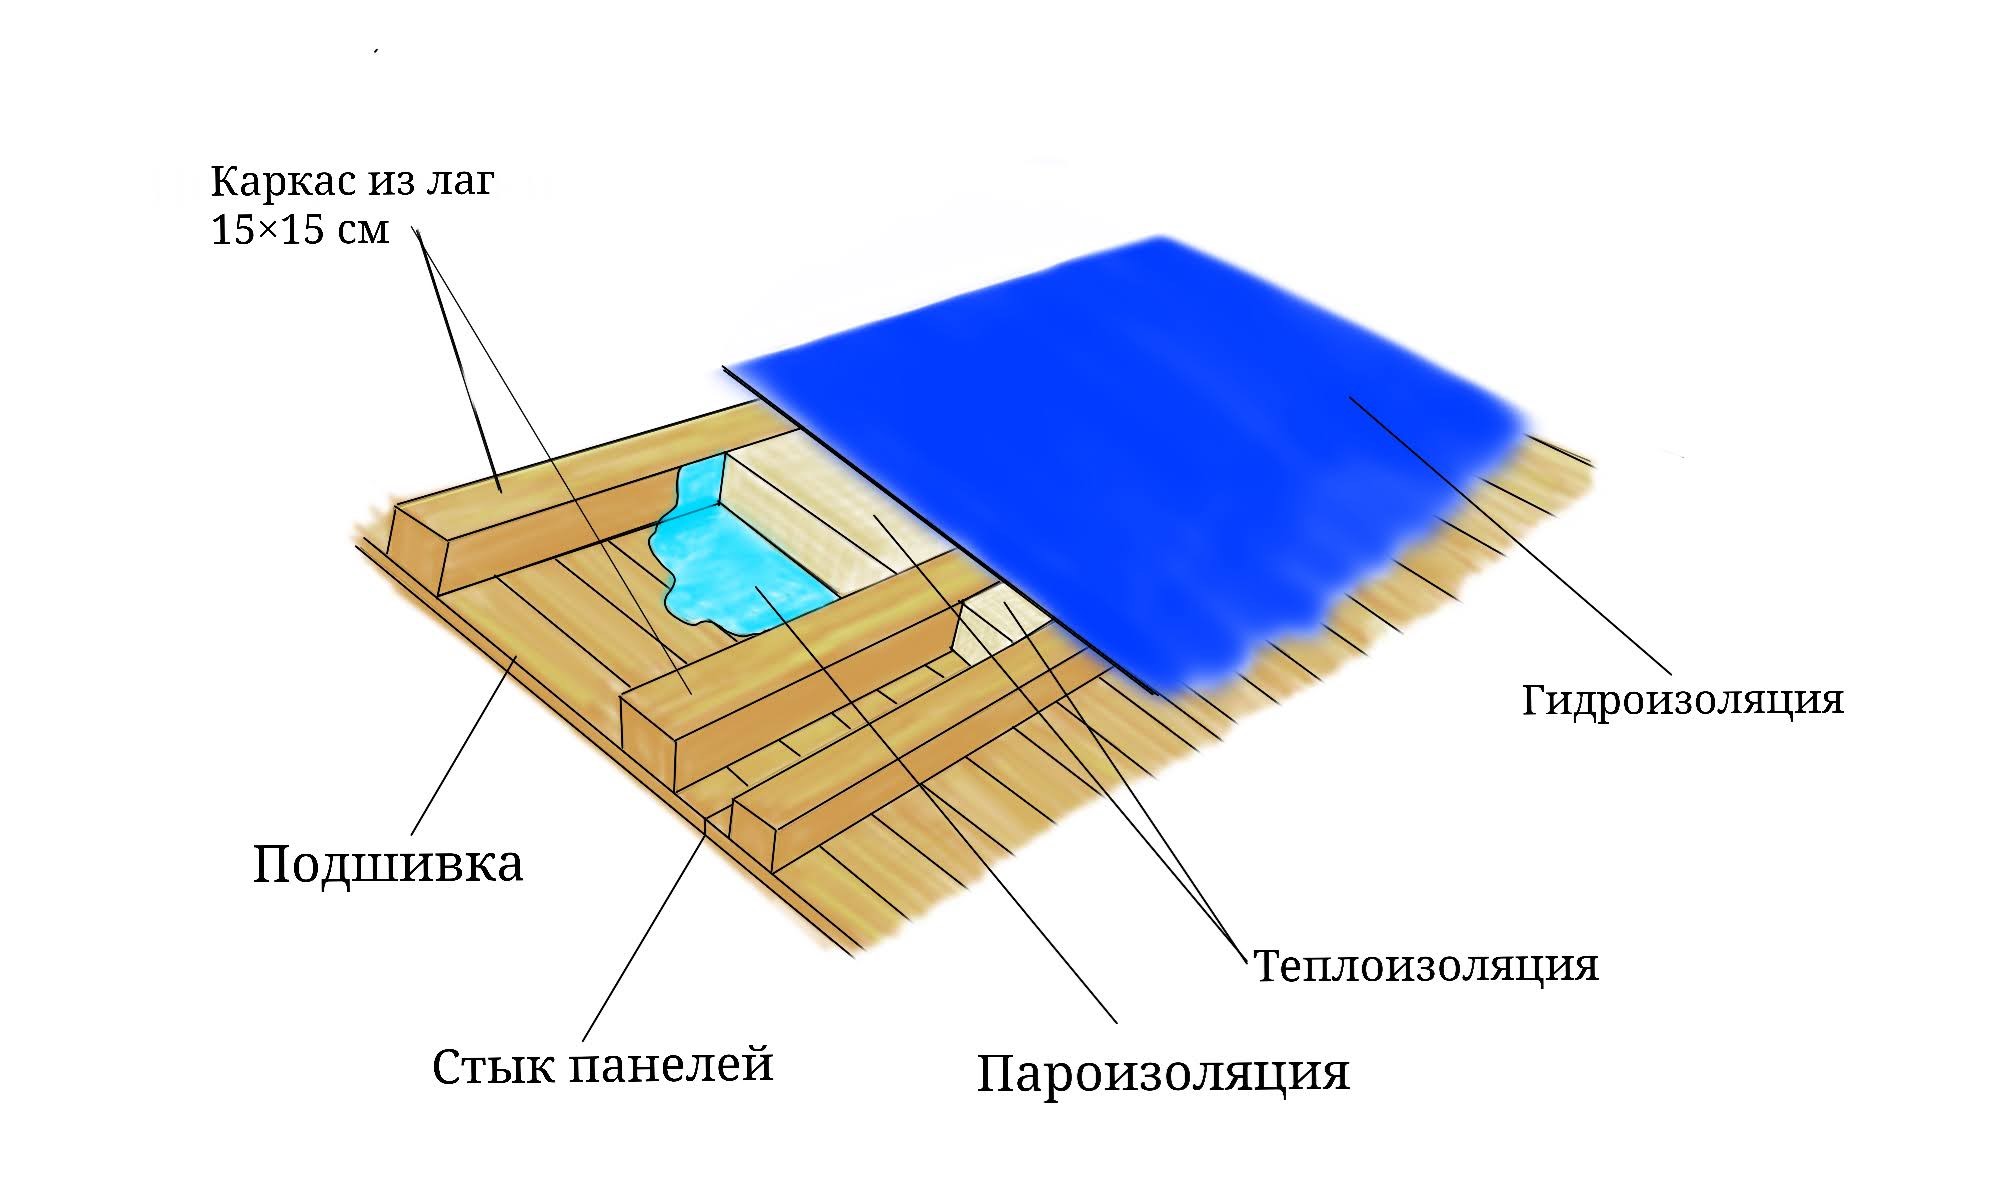 Примерная схема панельного потолка (вид со стороны чердака)